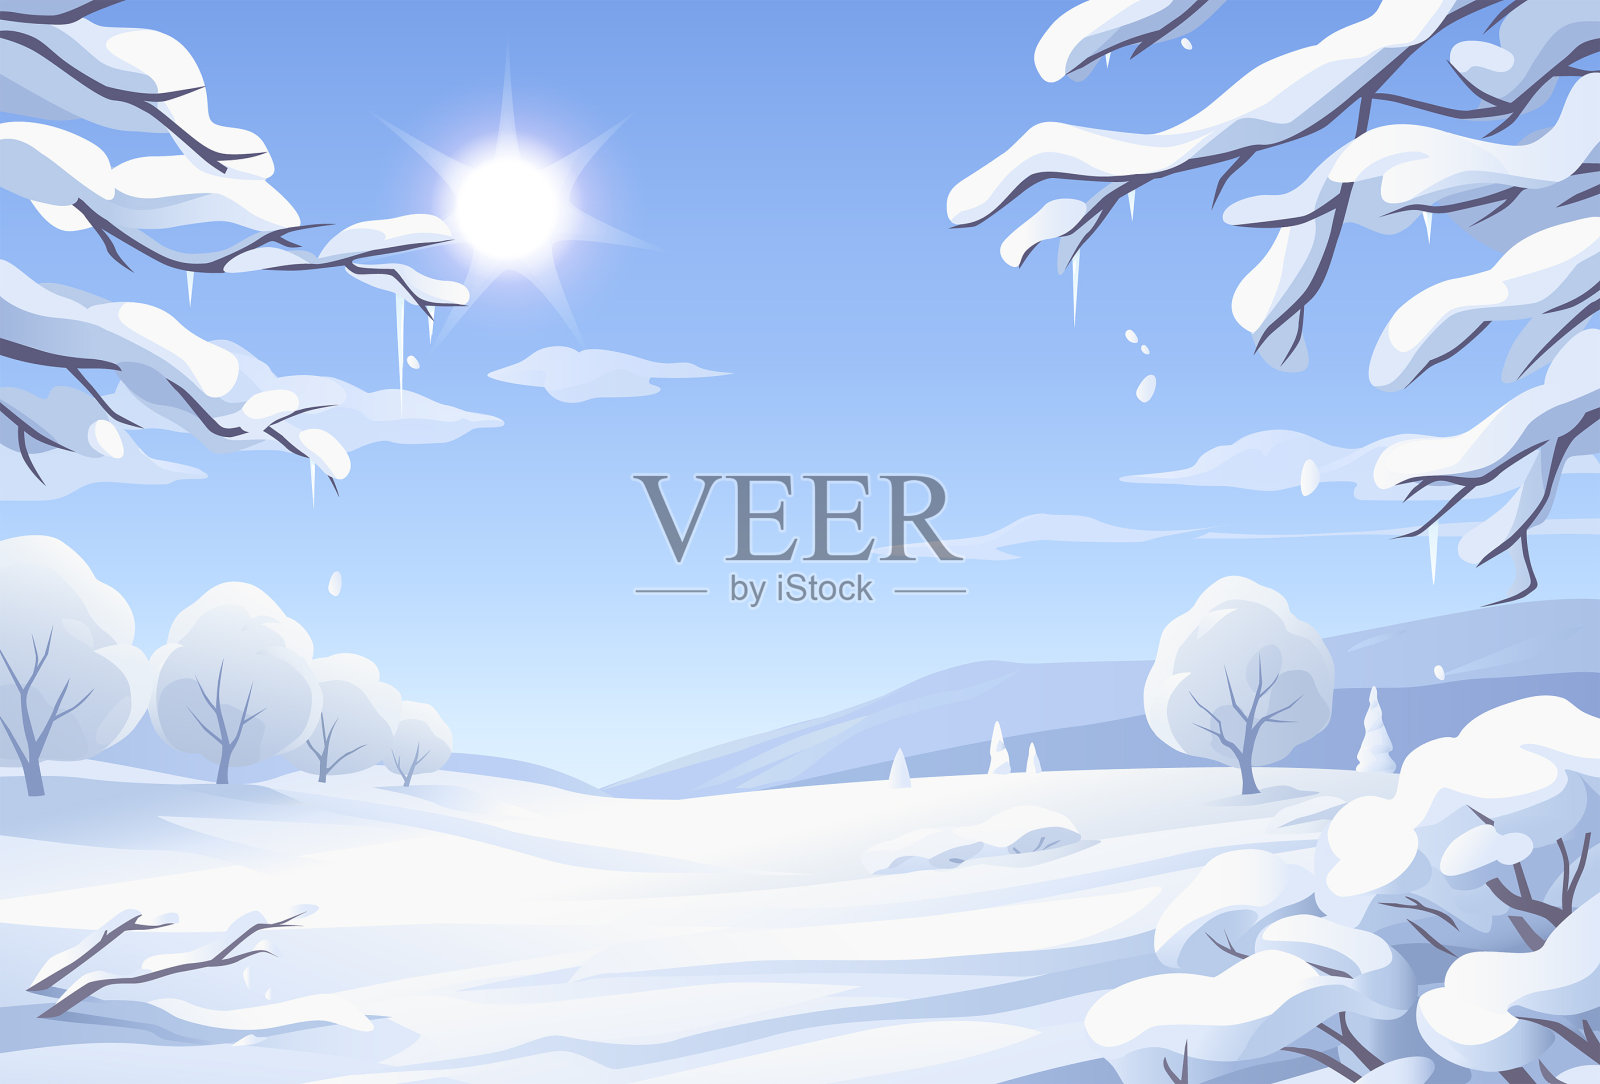 阳光明媚的冬季景观与积雪覆盖的树木插画图片素材